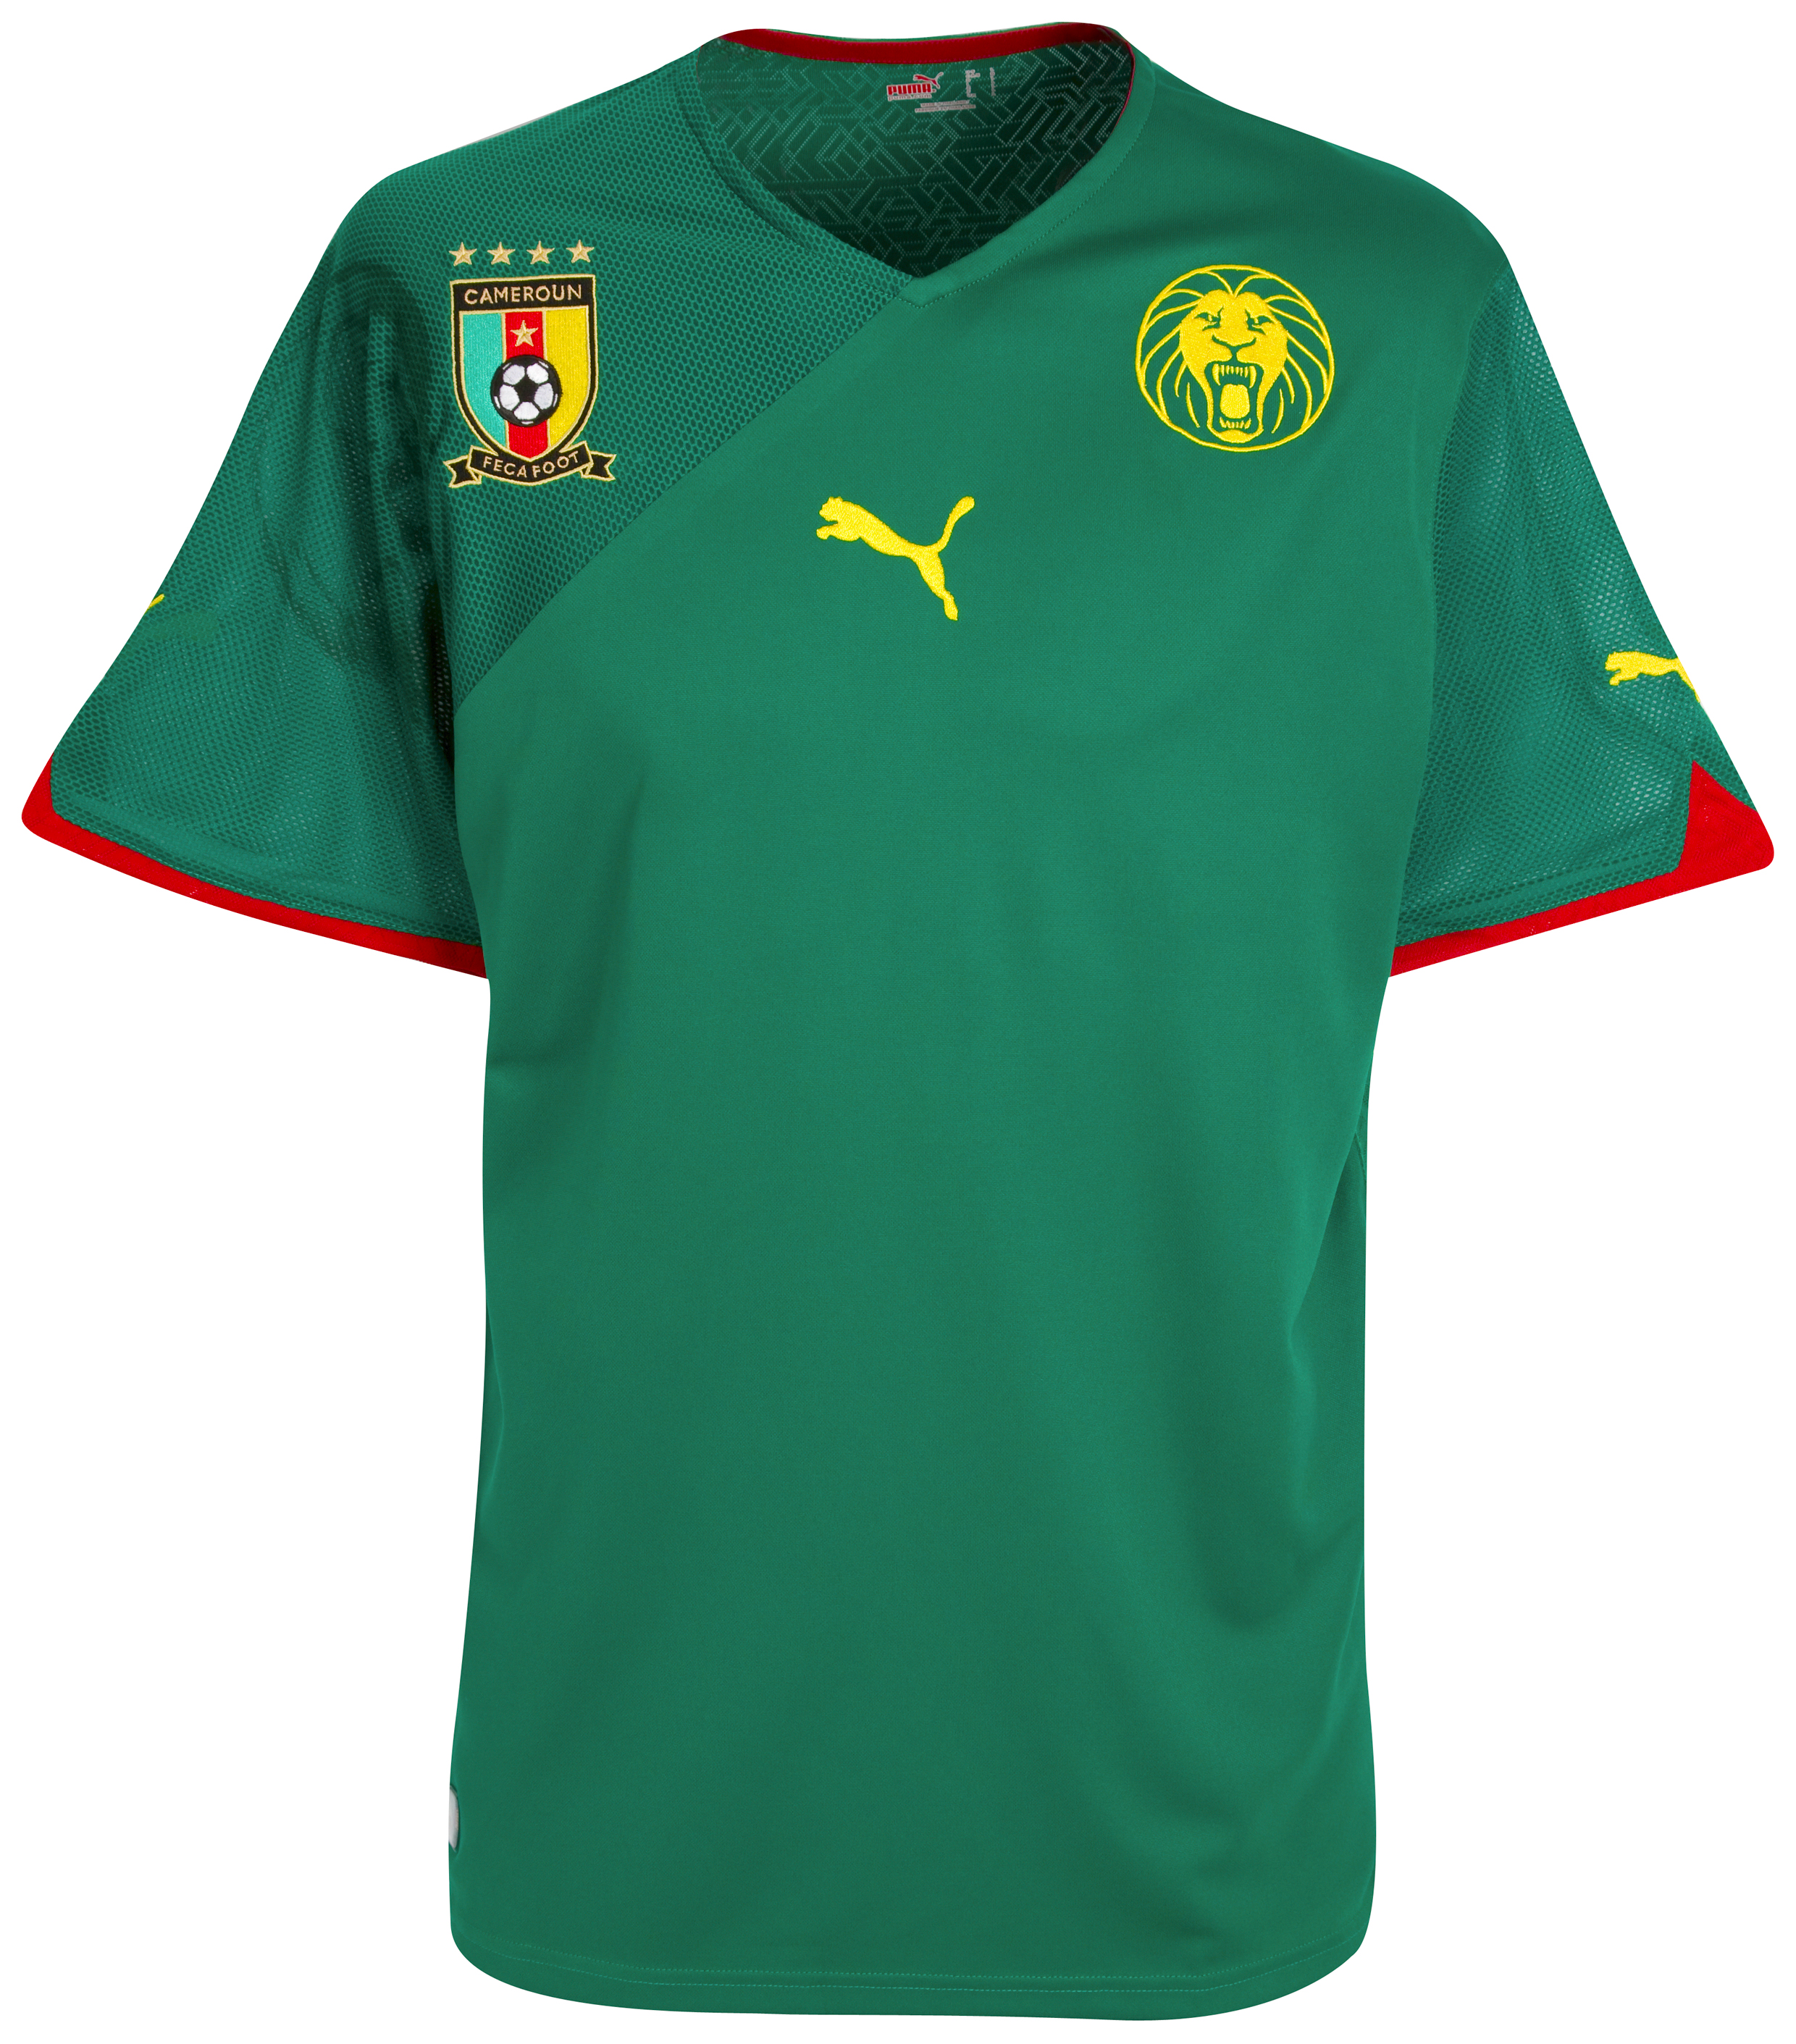 ملابس المنتخبات لكأس العالم 2010 Kb-60872